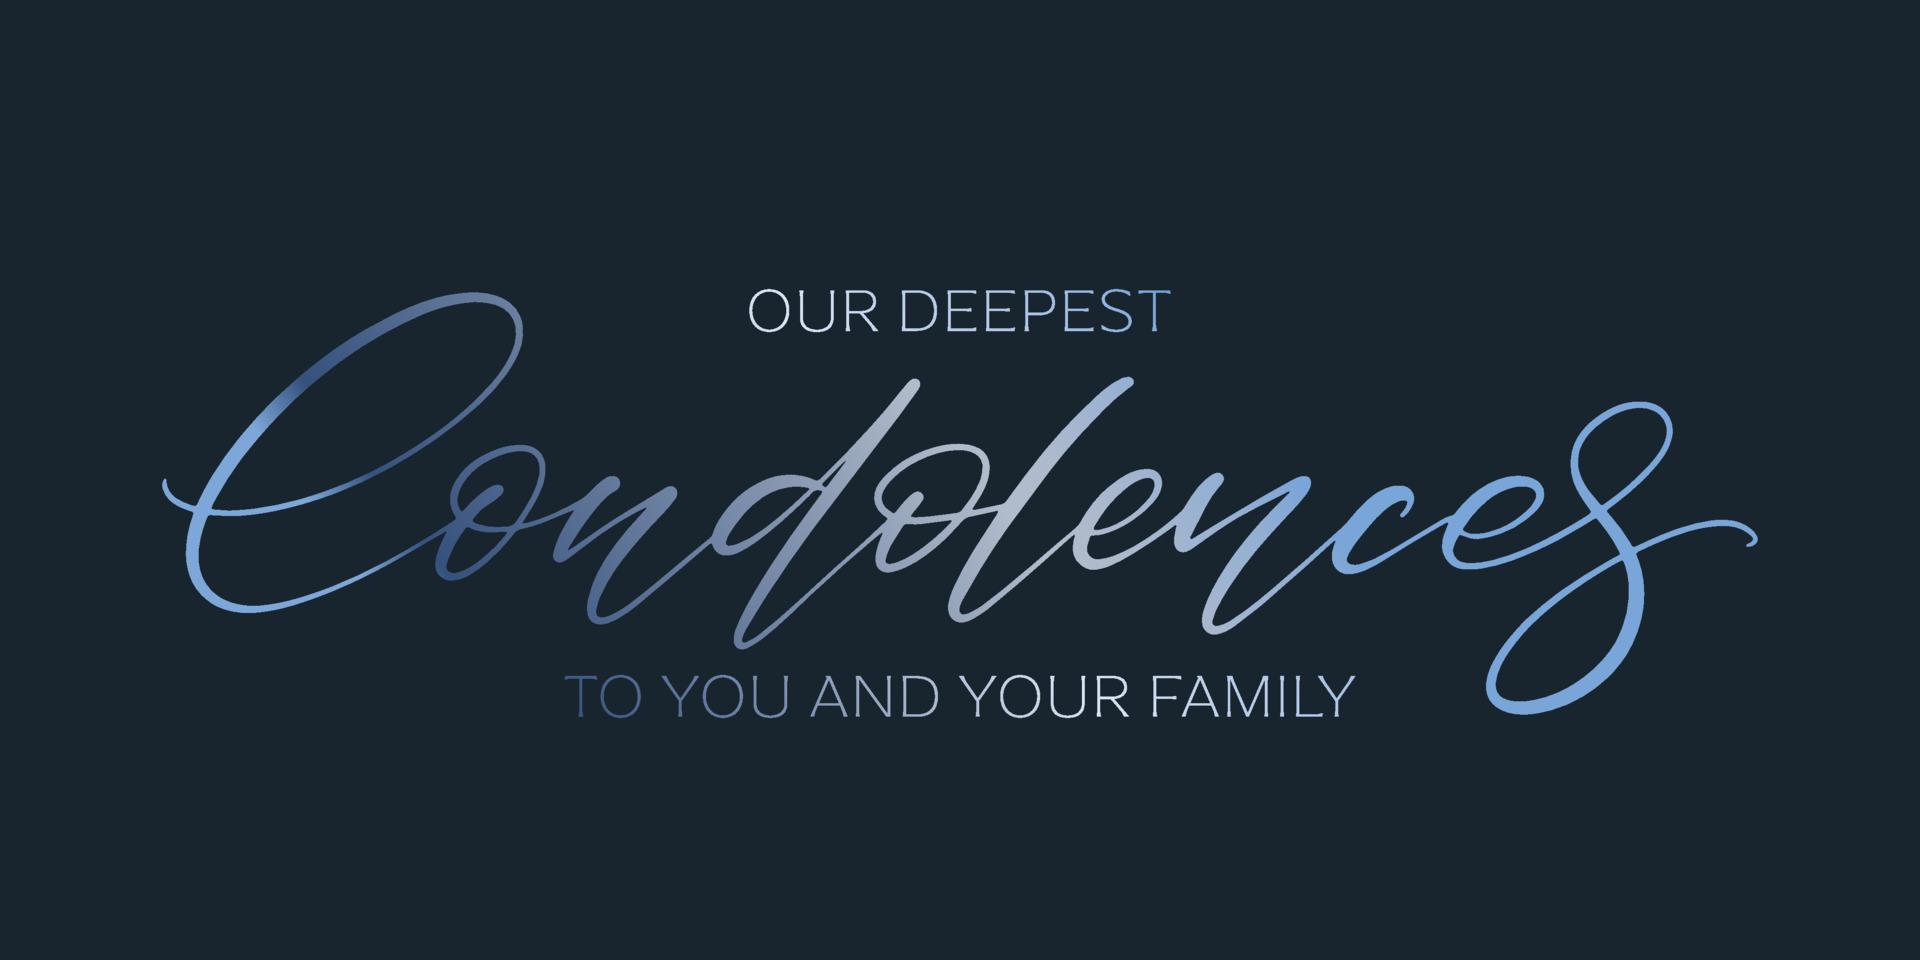 nos plus sincères condoléances à toi et ta carte familiale. texte vectoriel dégradé bleu manuscrit sur fond sombre. message de condoléances.